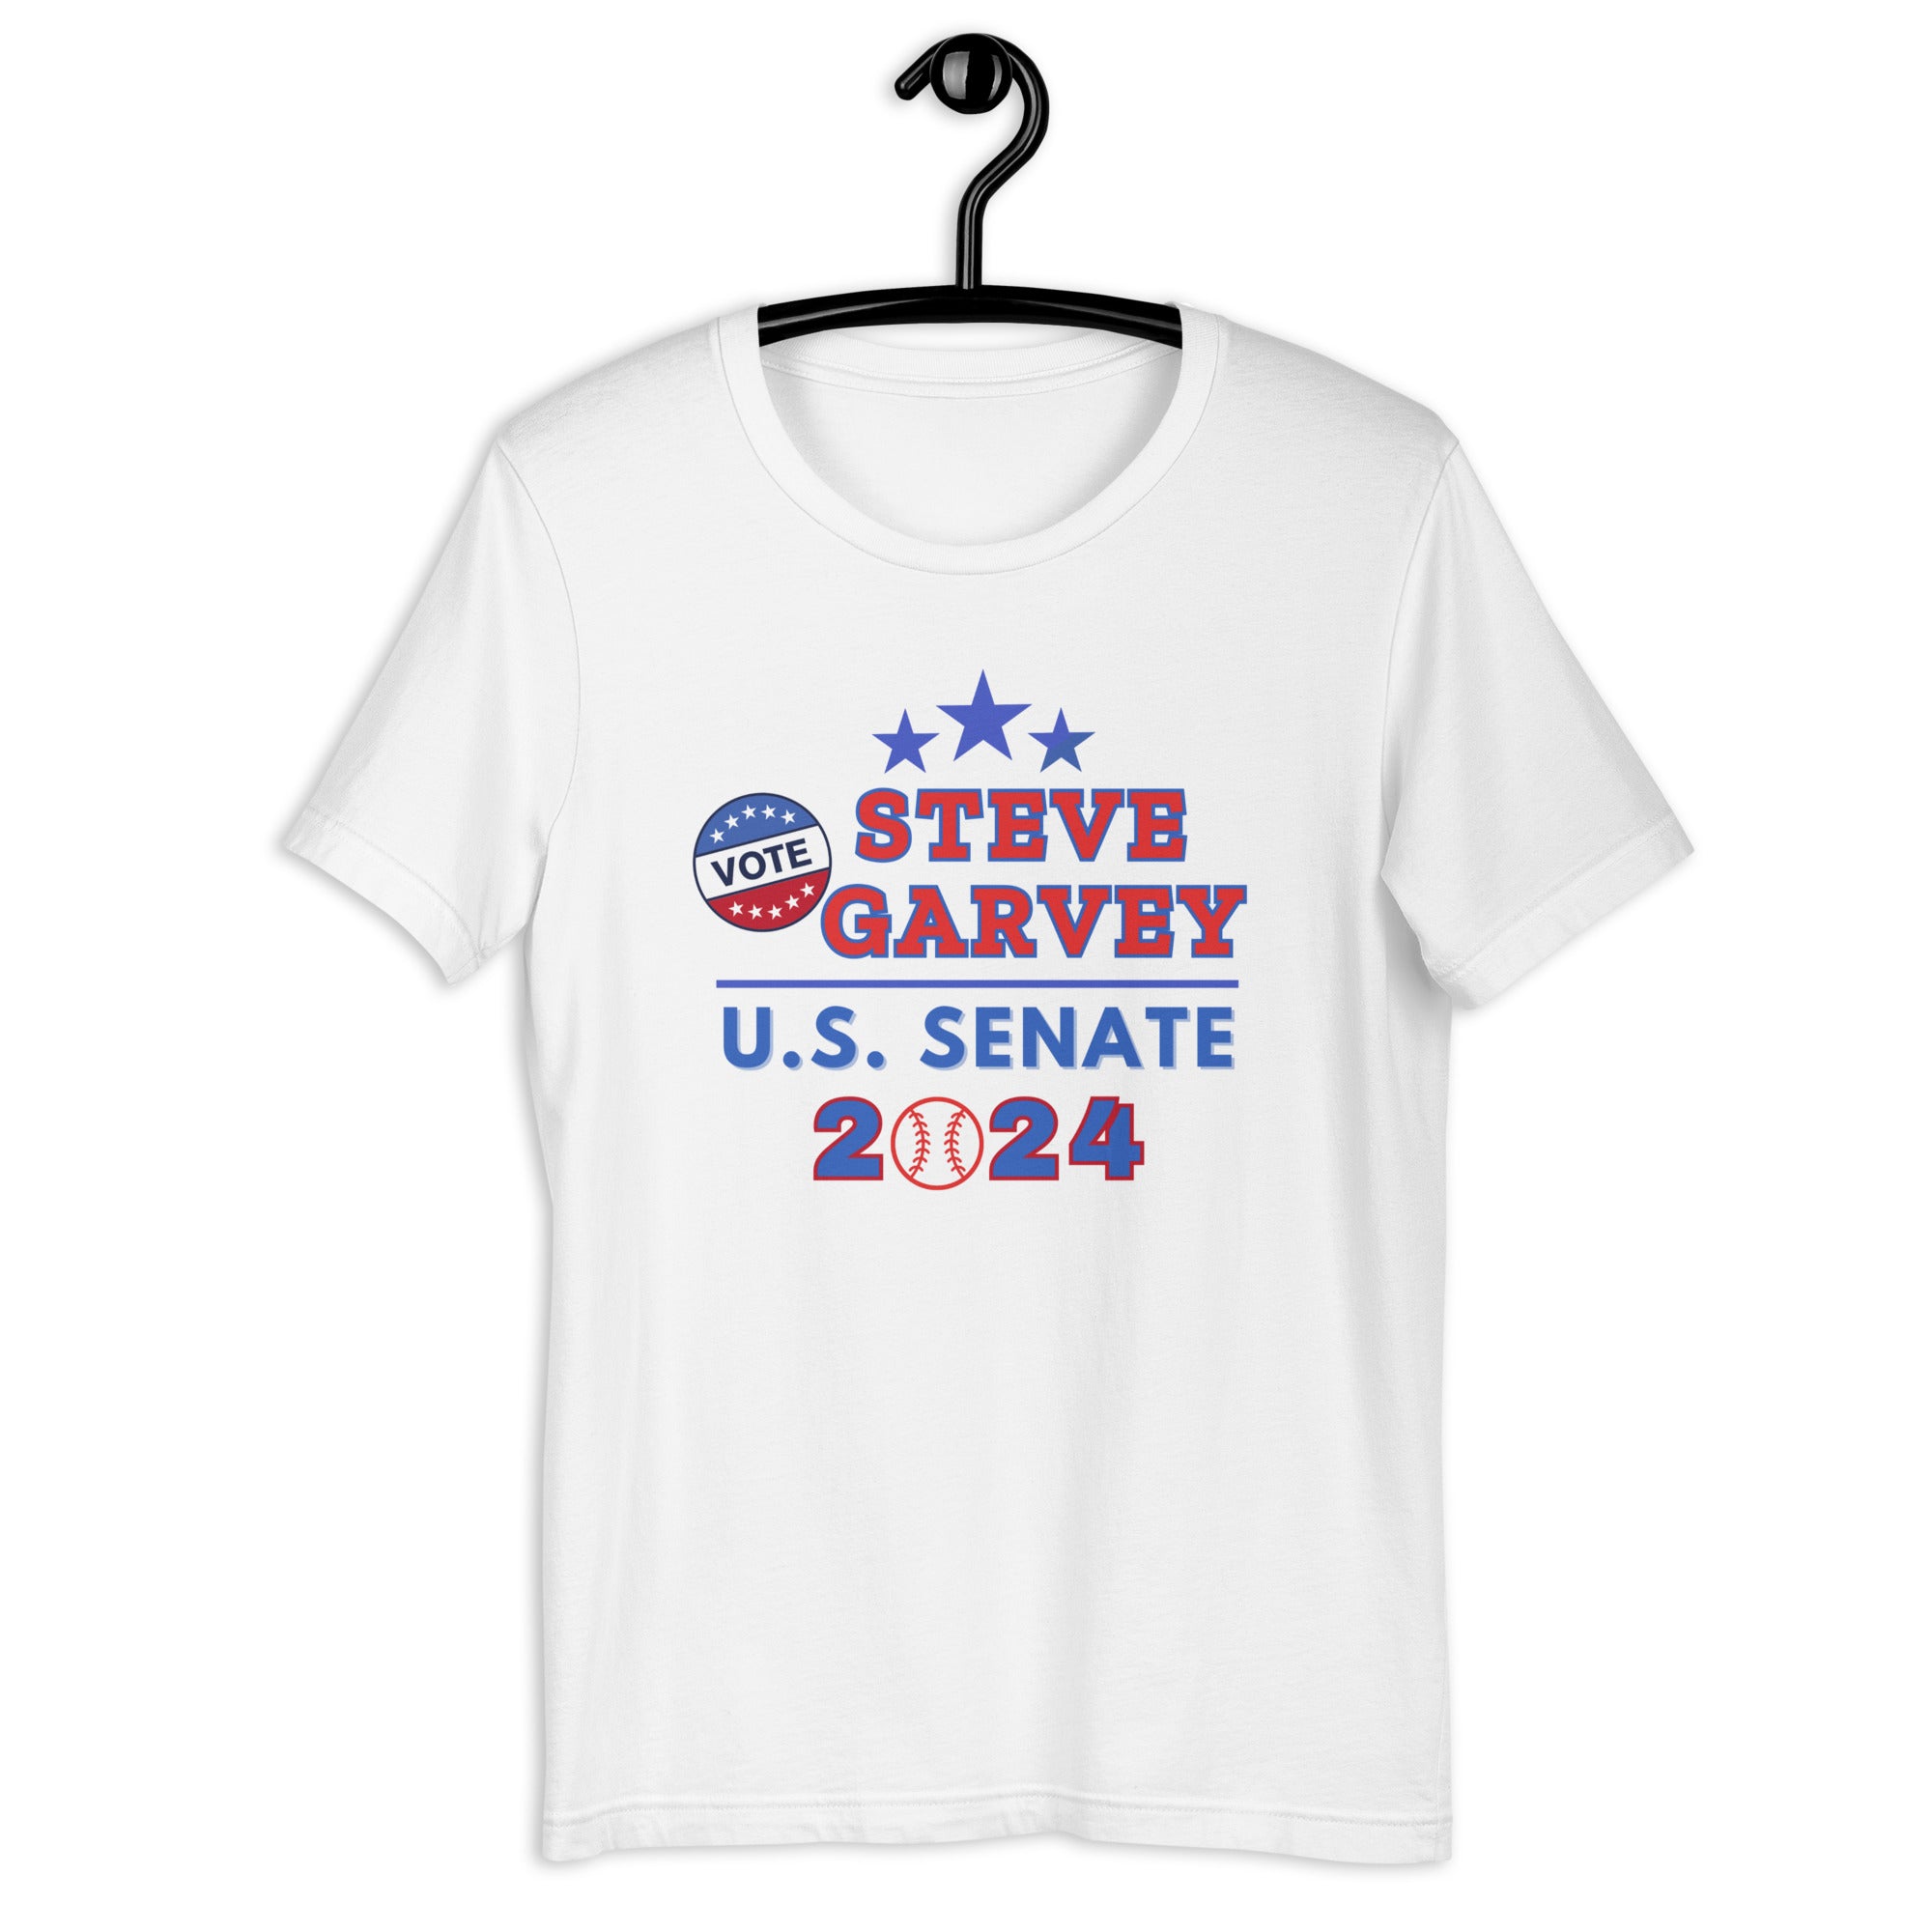 Steve Garvey for U.S. Senate T-Shirt